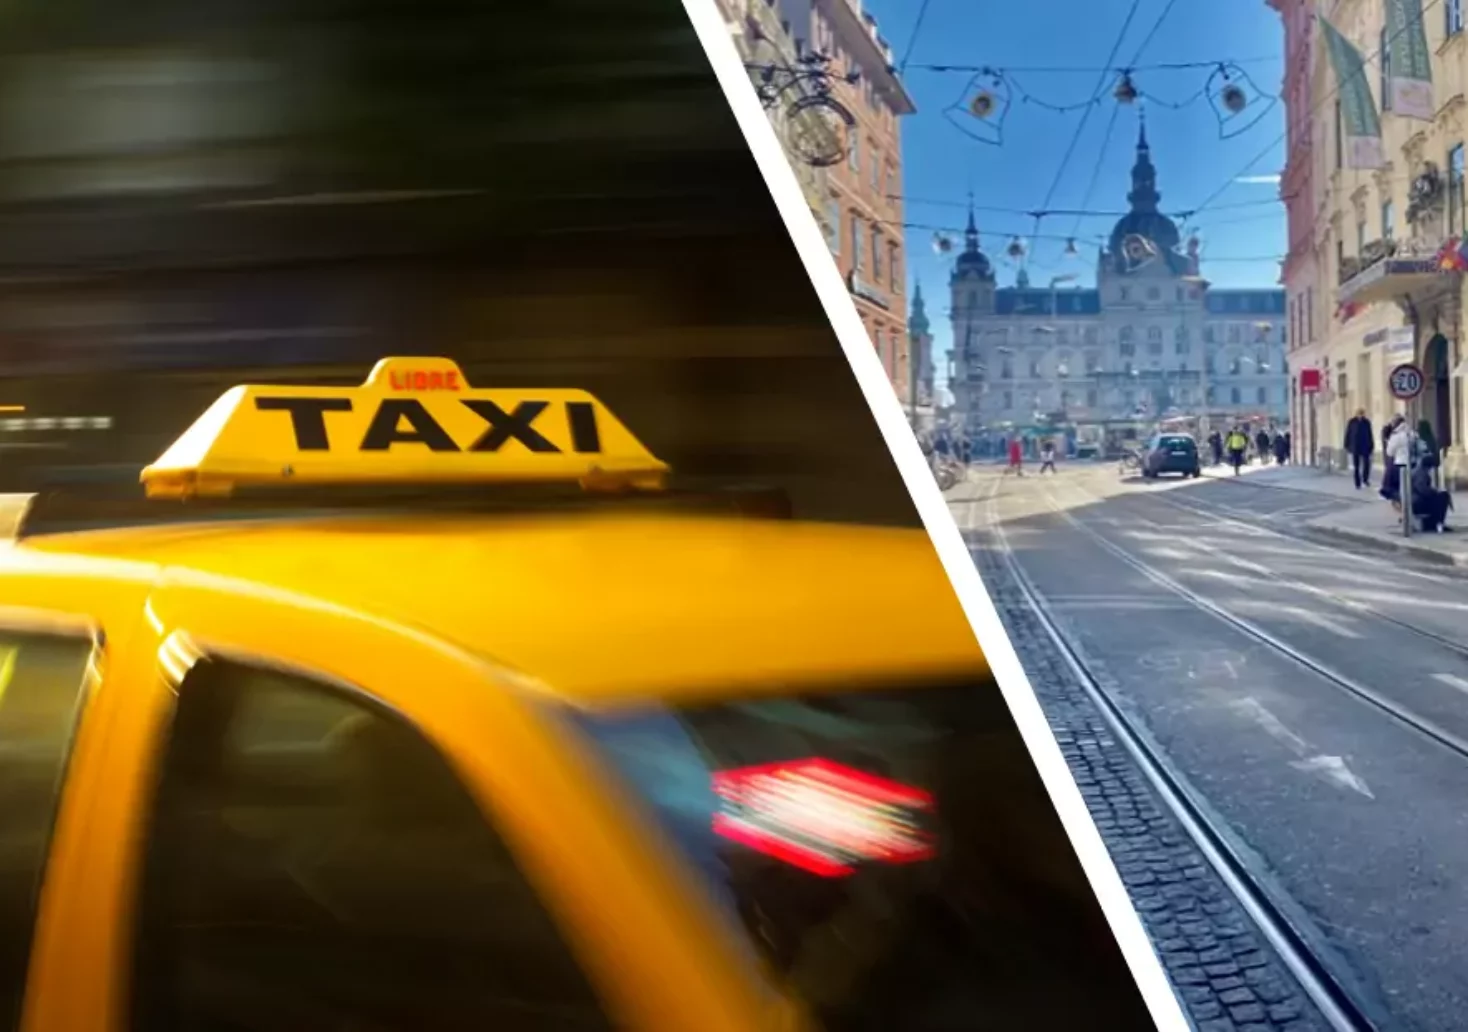 Bild auf 5min.at zeigt eine Montage von einem Taxi und der Stadt Graz.